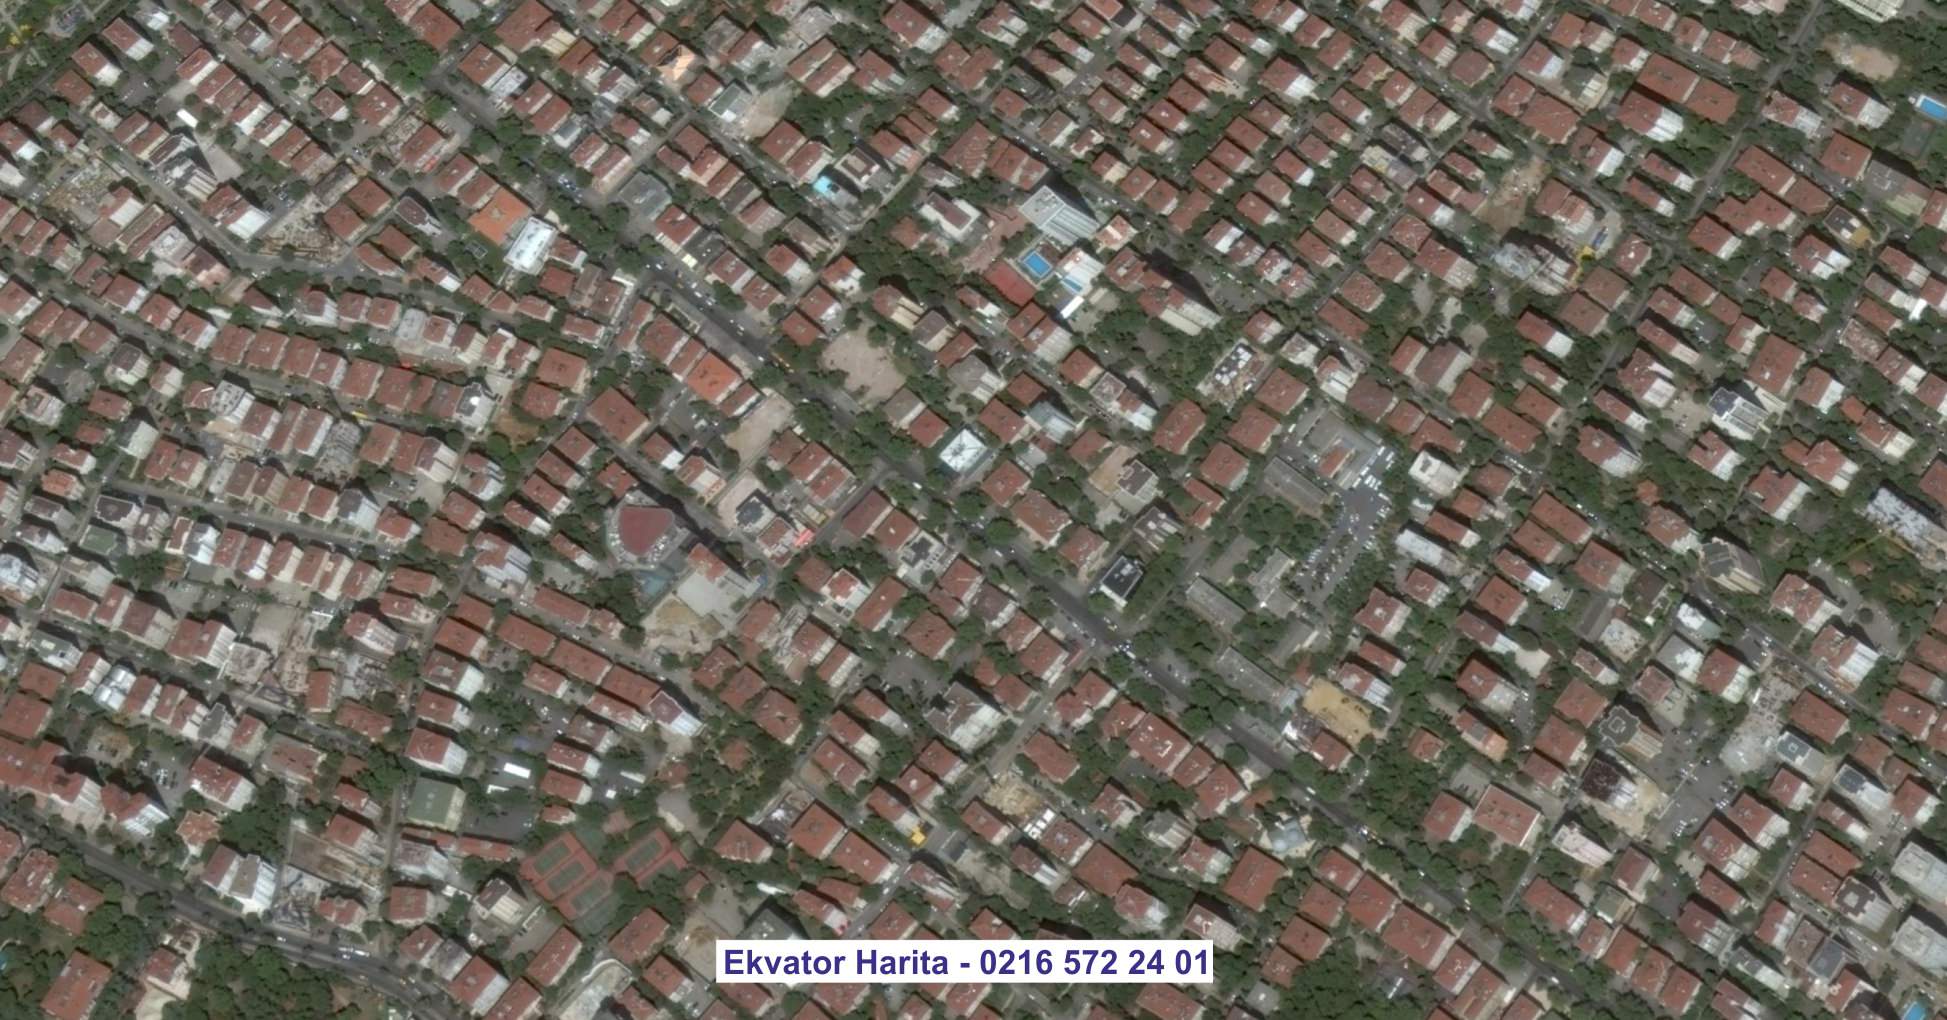 Başakşehir Uydu Görüntüsü Örnek Fotoğrafı